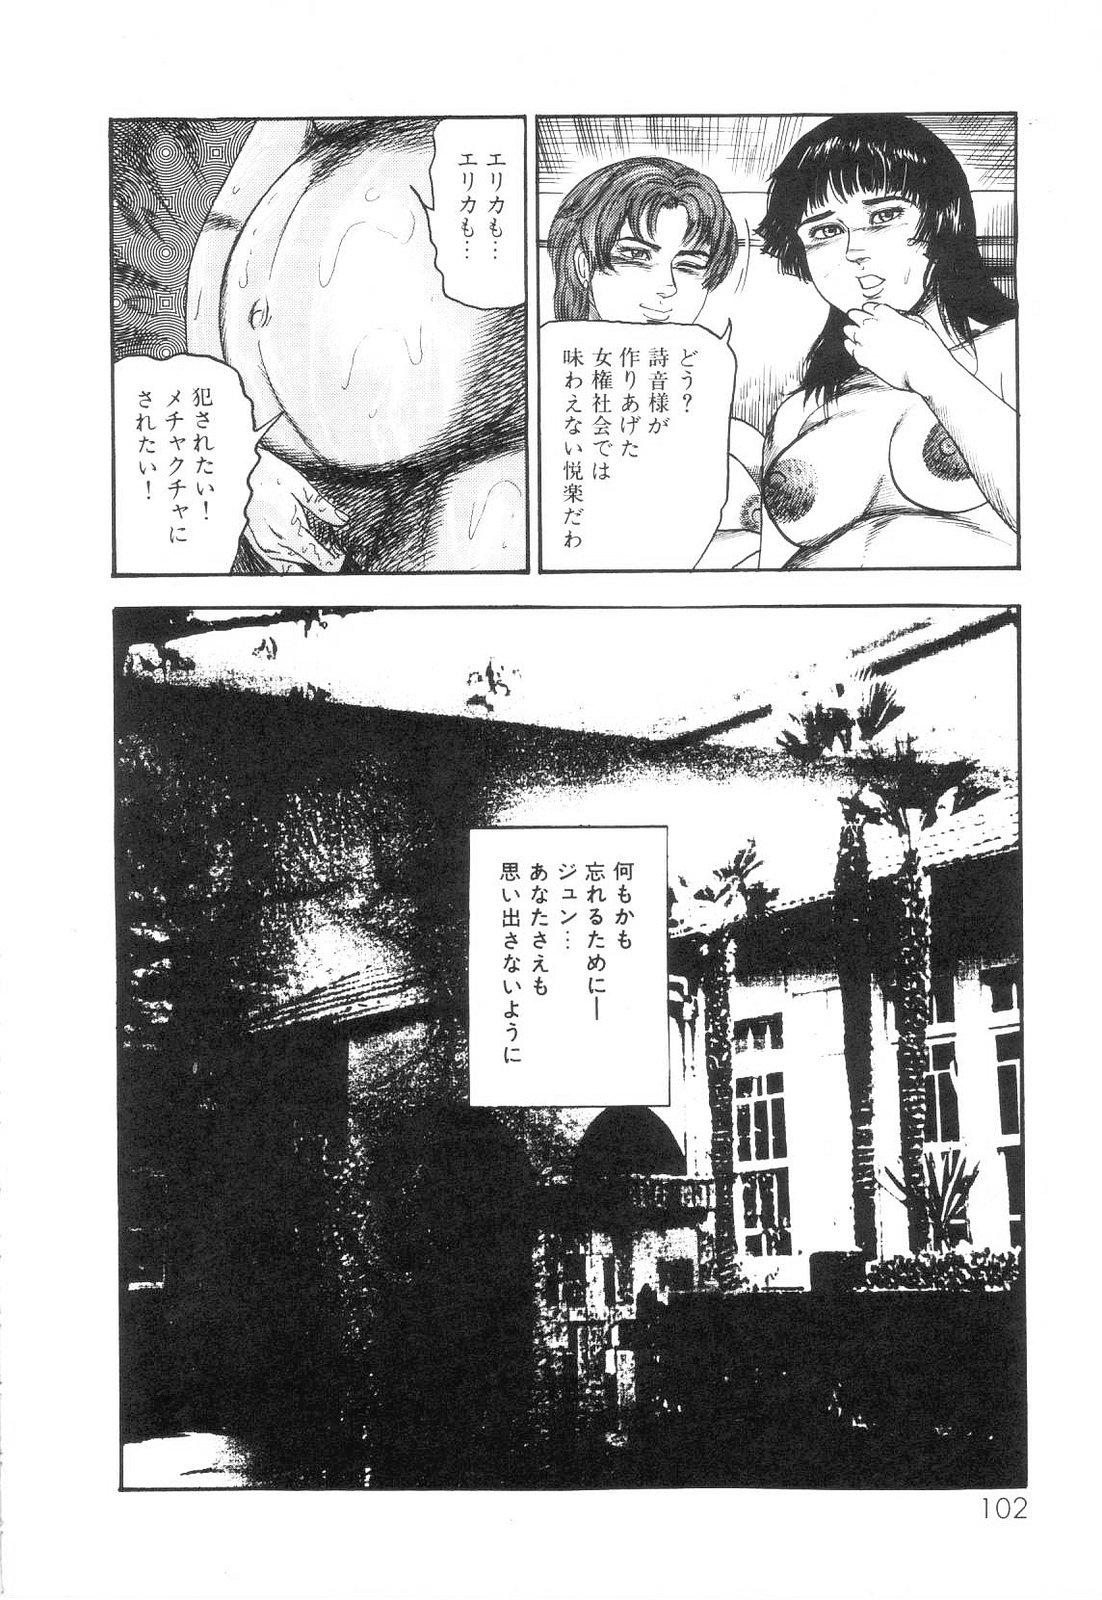 Shiro no Mokushiroku Vol. 6 - Juuai Erika no Shou 103